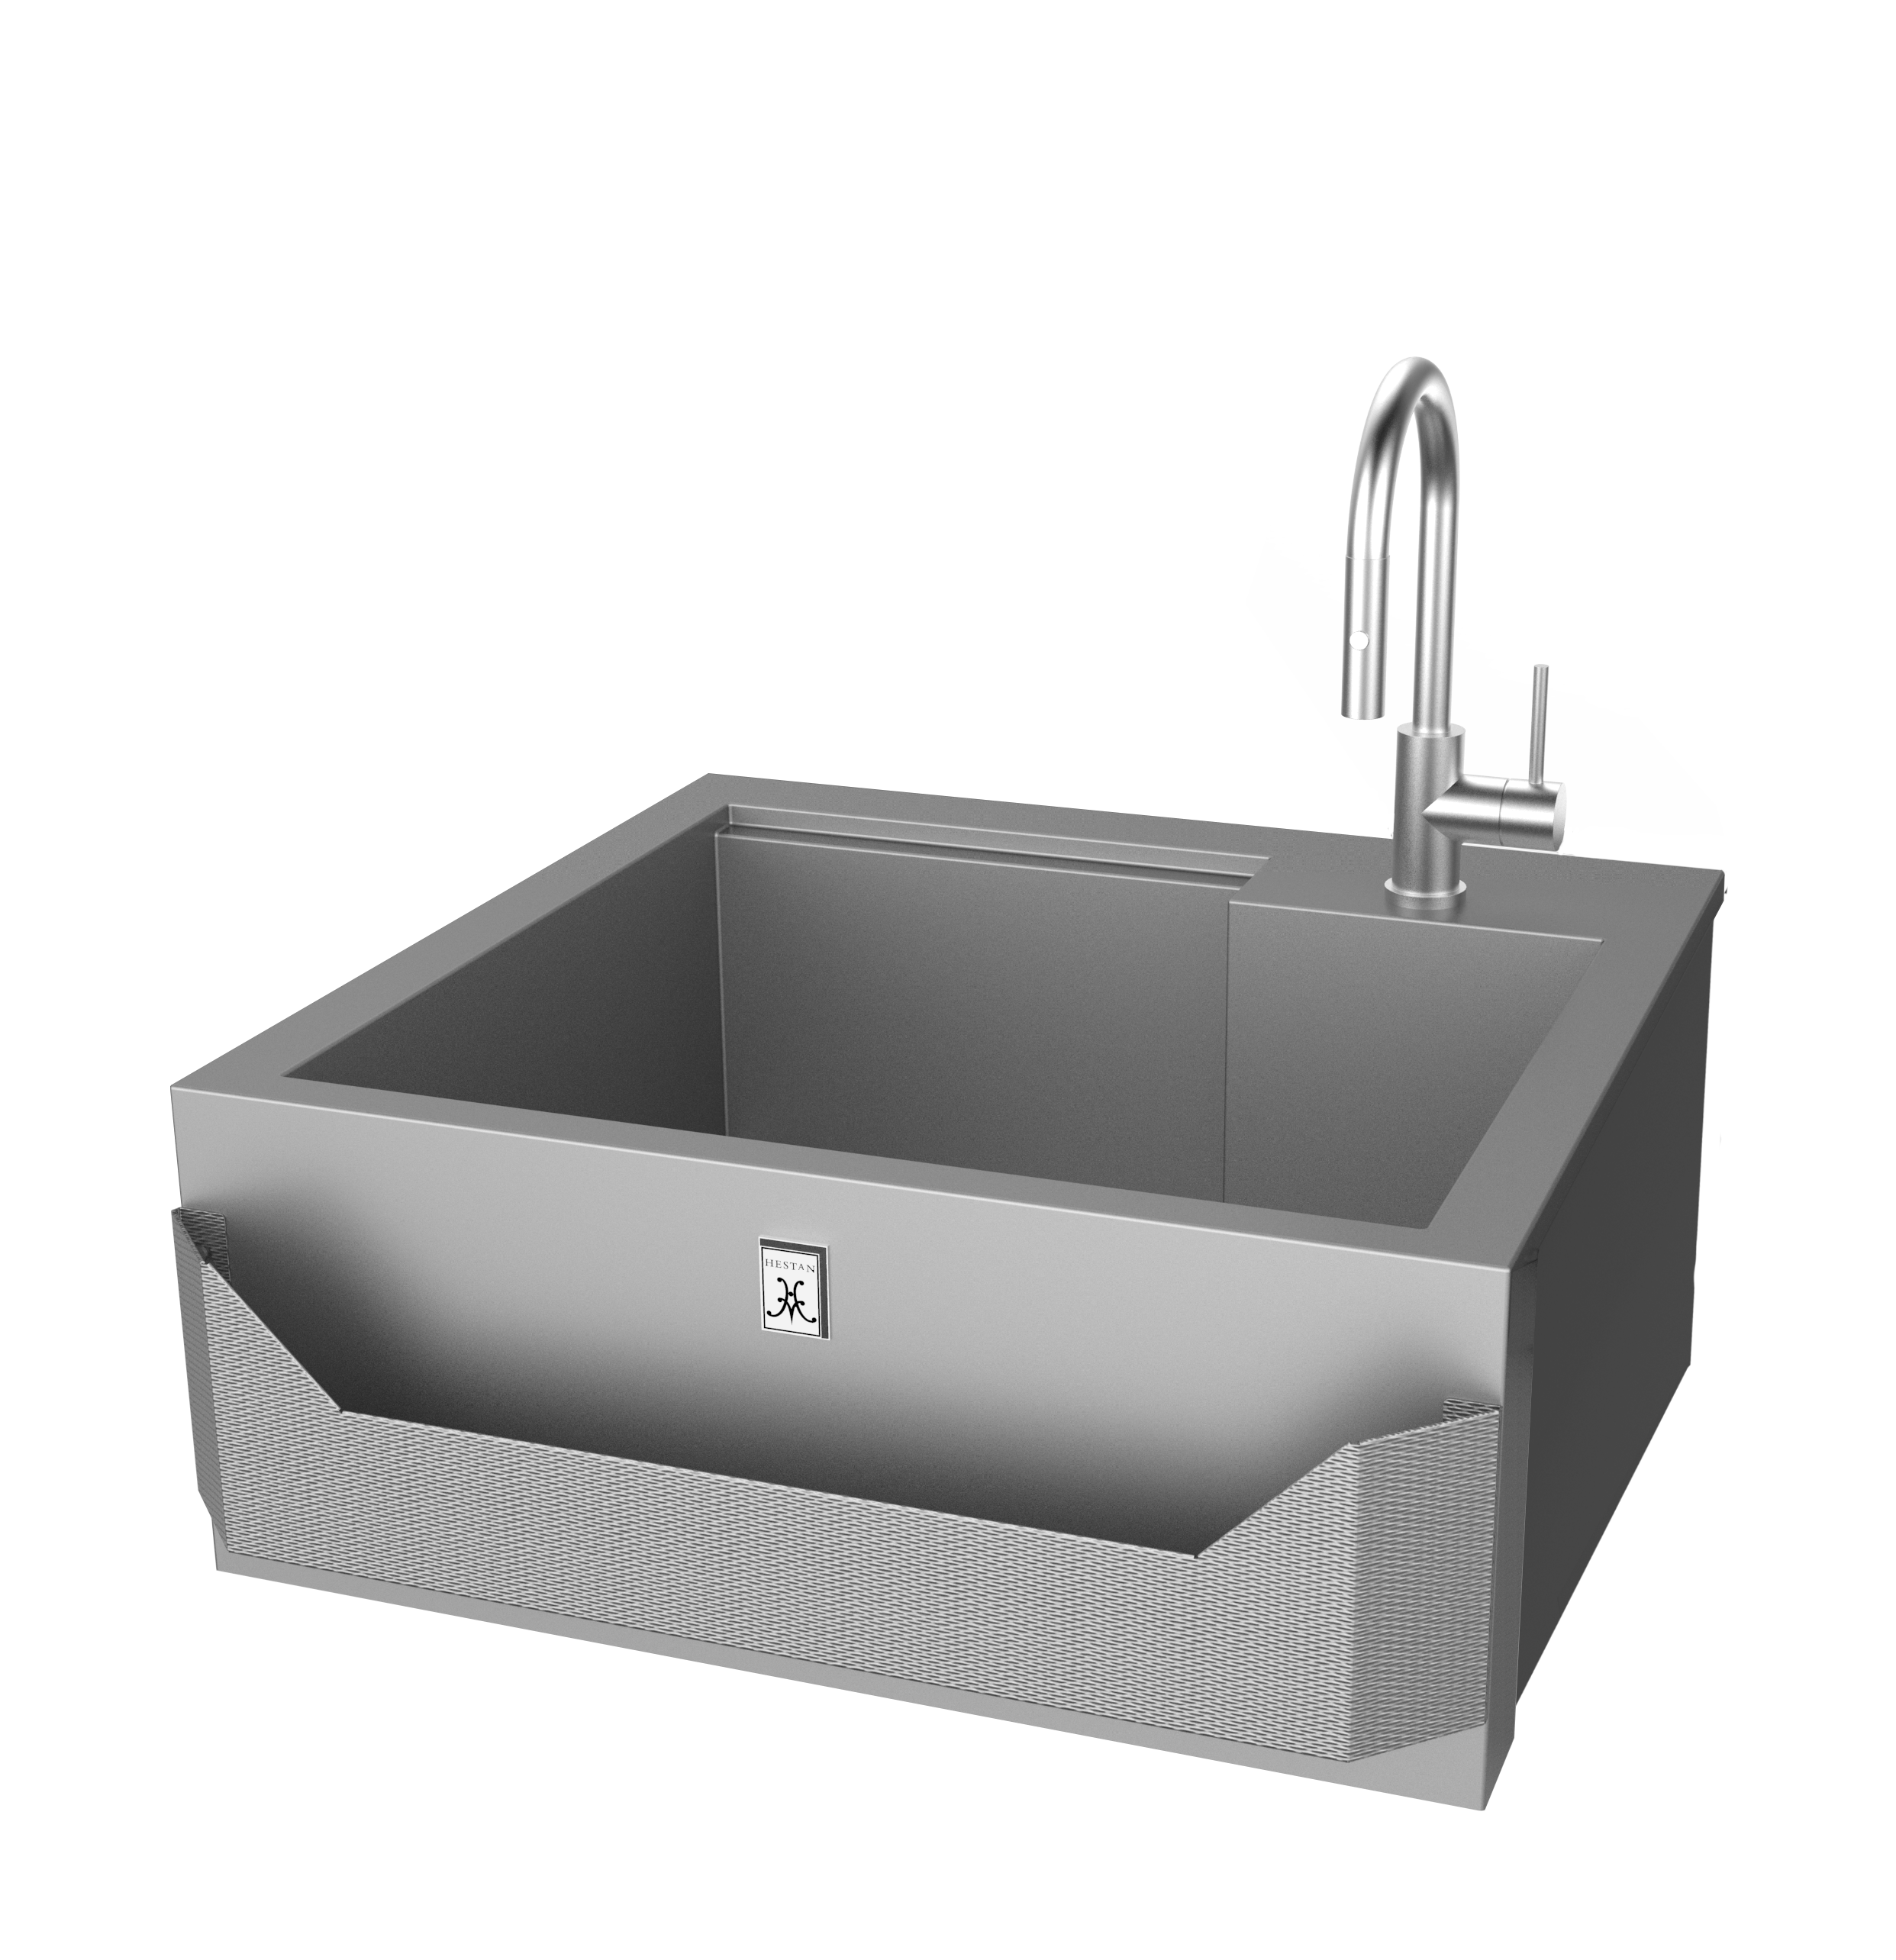 30-hestan-outdoor-insulated-sink